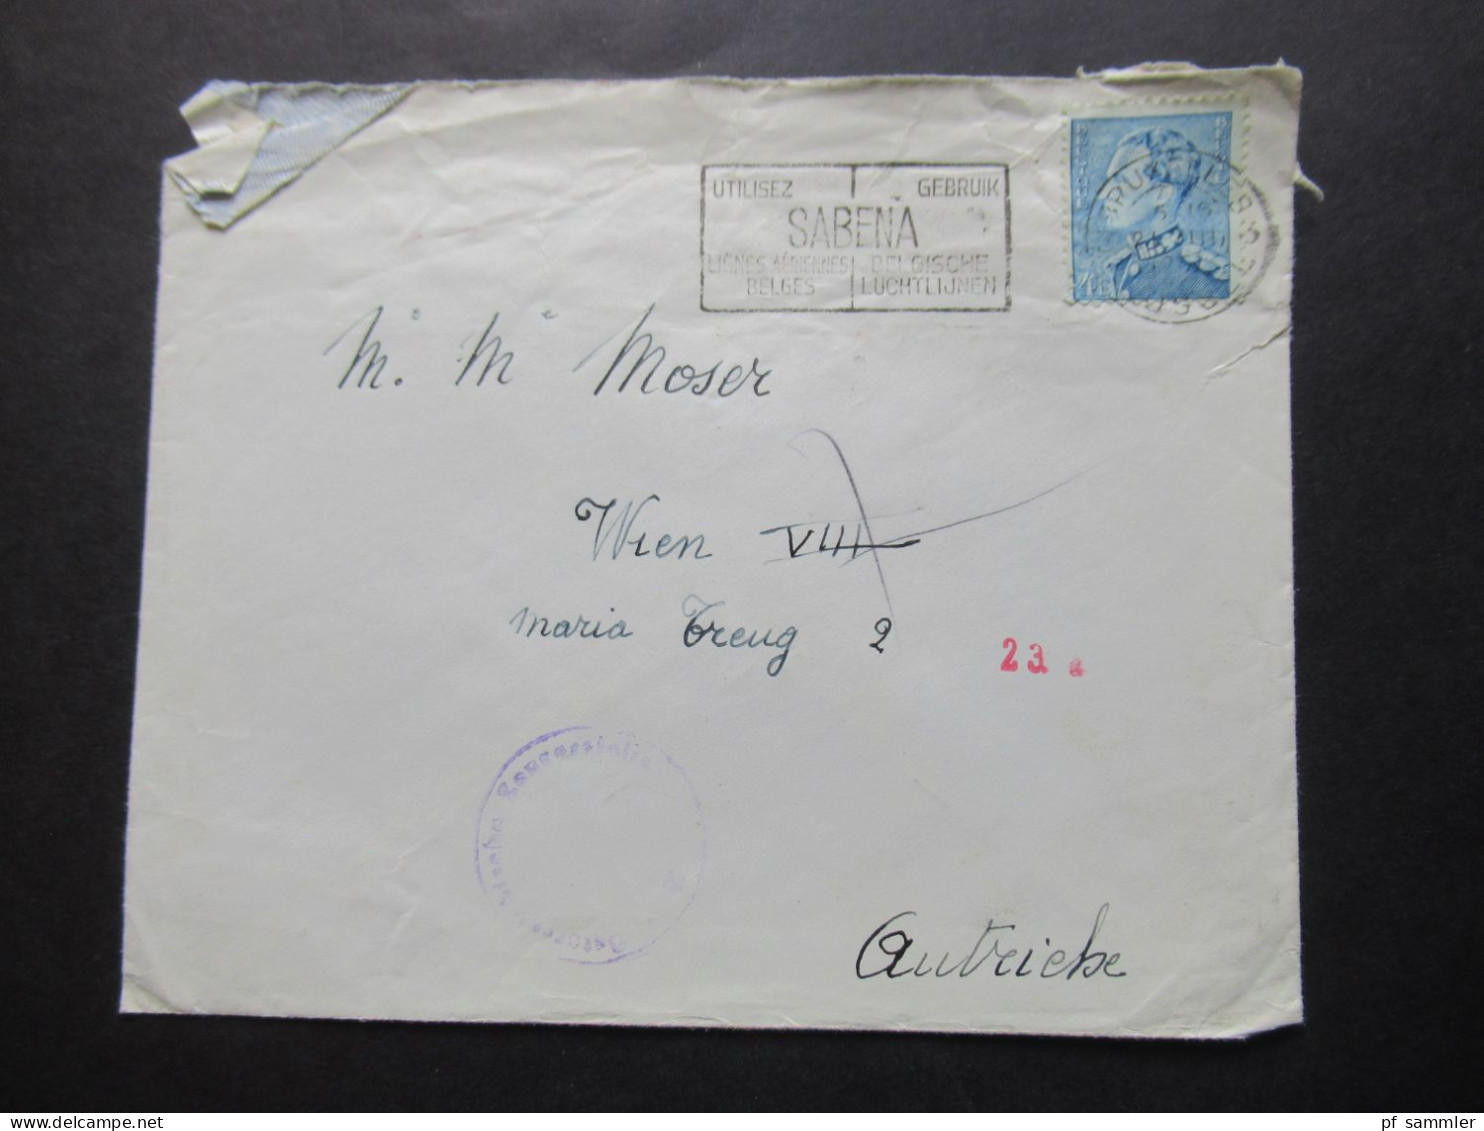 Belgien 1951 Auslandsbrief Nach Wien Zensurbeleg / Stempel Österrereichische Zensurstelle Und Roter Stempel 23 A - Lettres & Documents